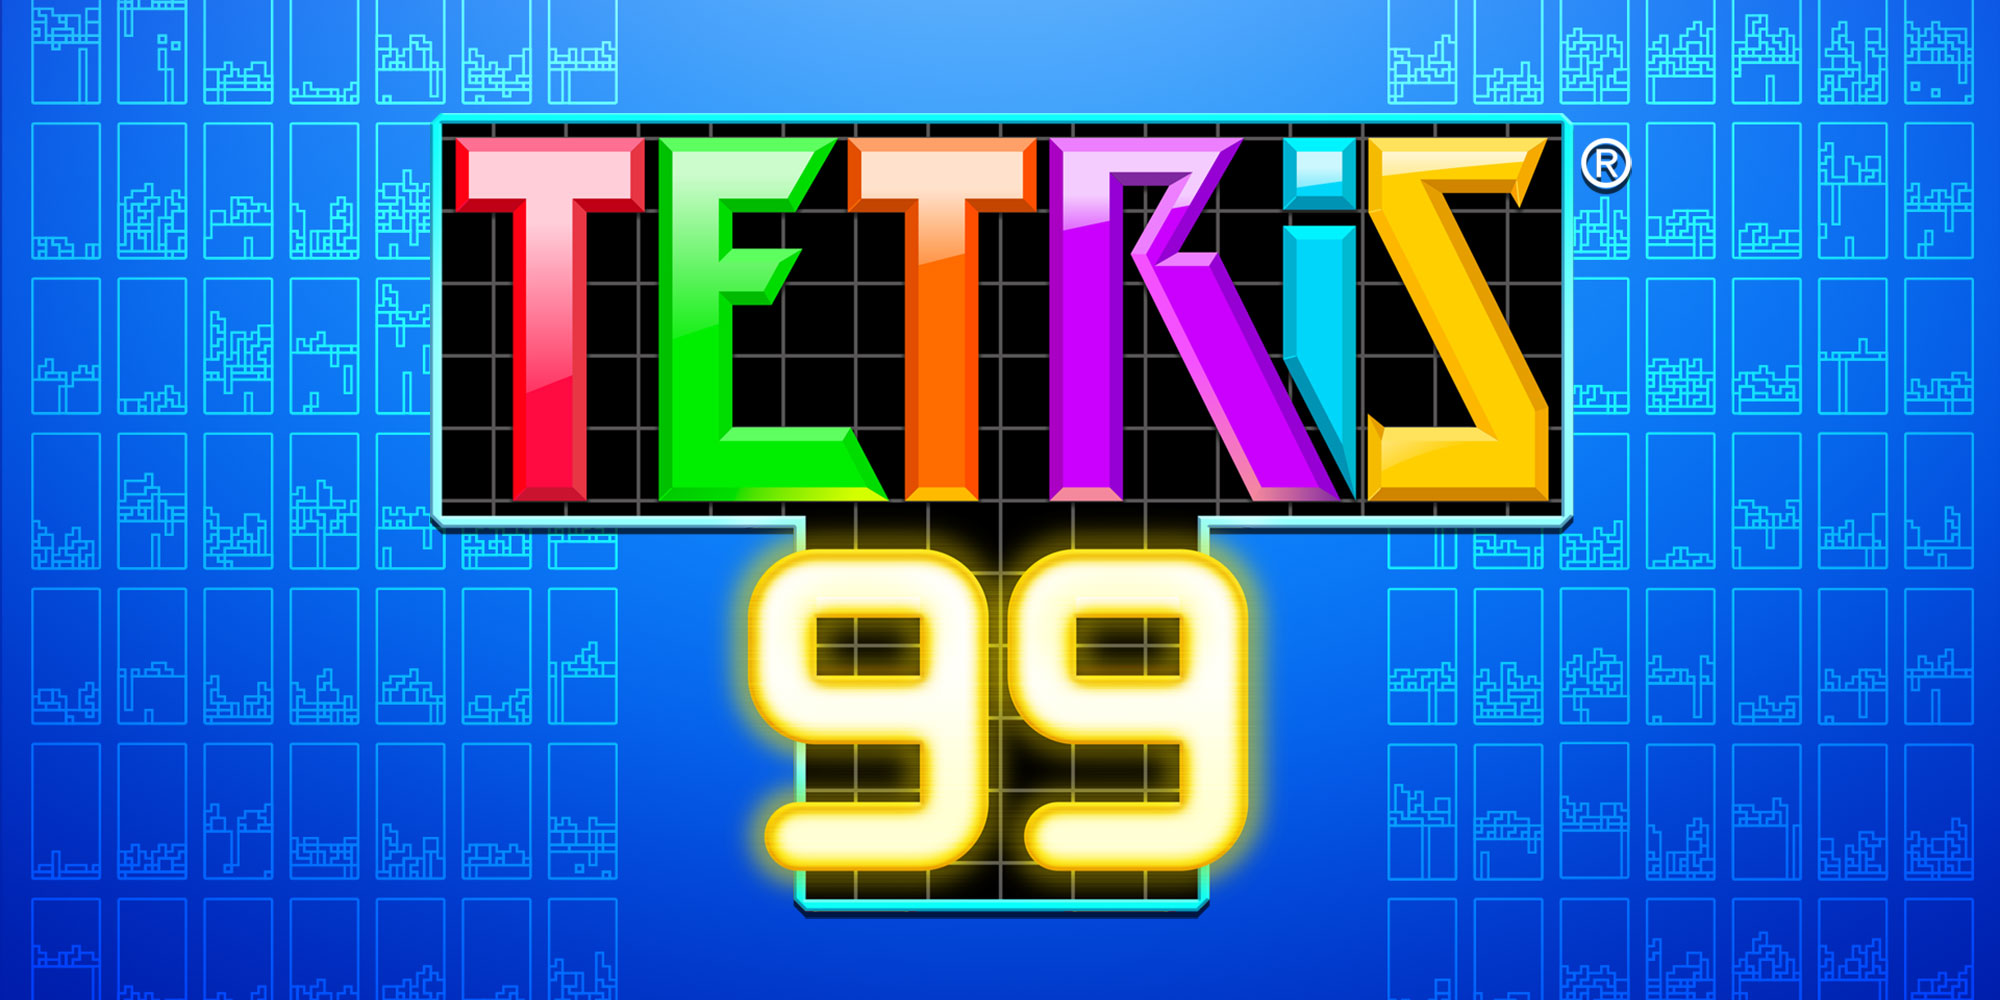 tetris 99 free download